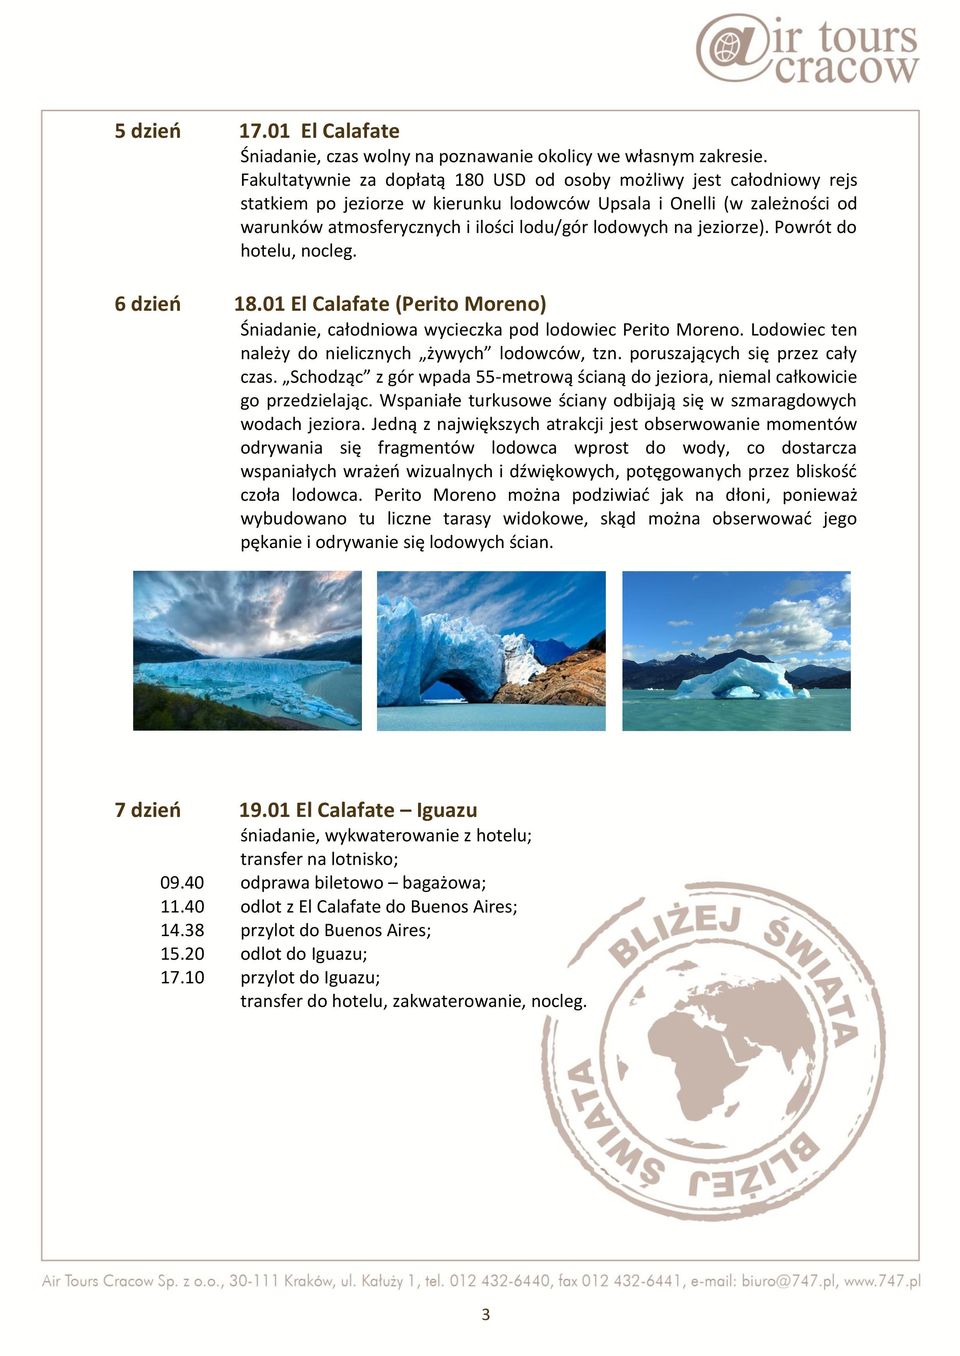 jeziorze). Powrót do hotelu, nocleg. 6 dzień 18.01 El Calafate (Perito Moreno) Śniadanie, całodniowa wycieczka pod lodowiec Perito Moreno. Lodowiec ten należy do nielicznych żywych lodowców, tzn.